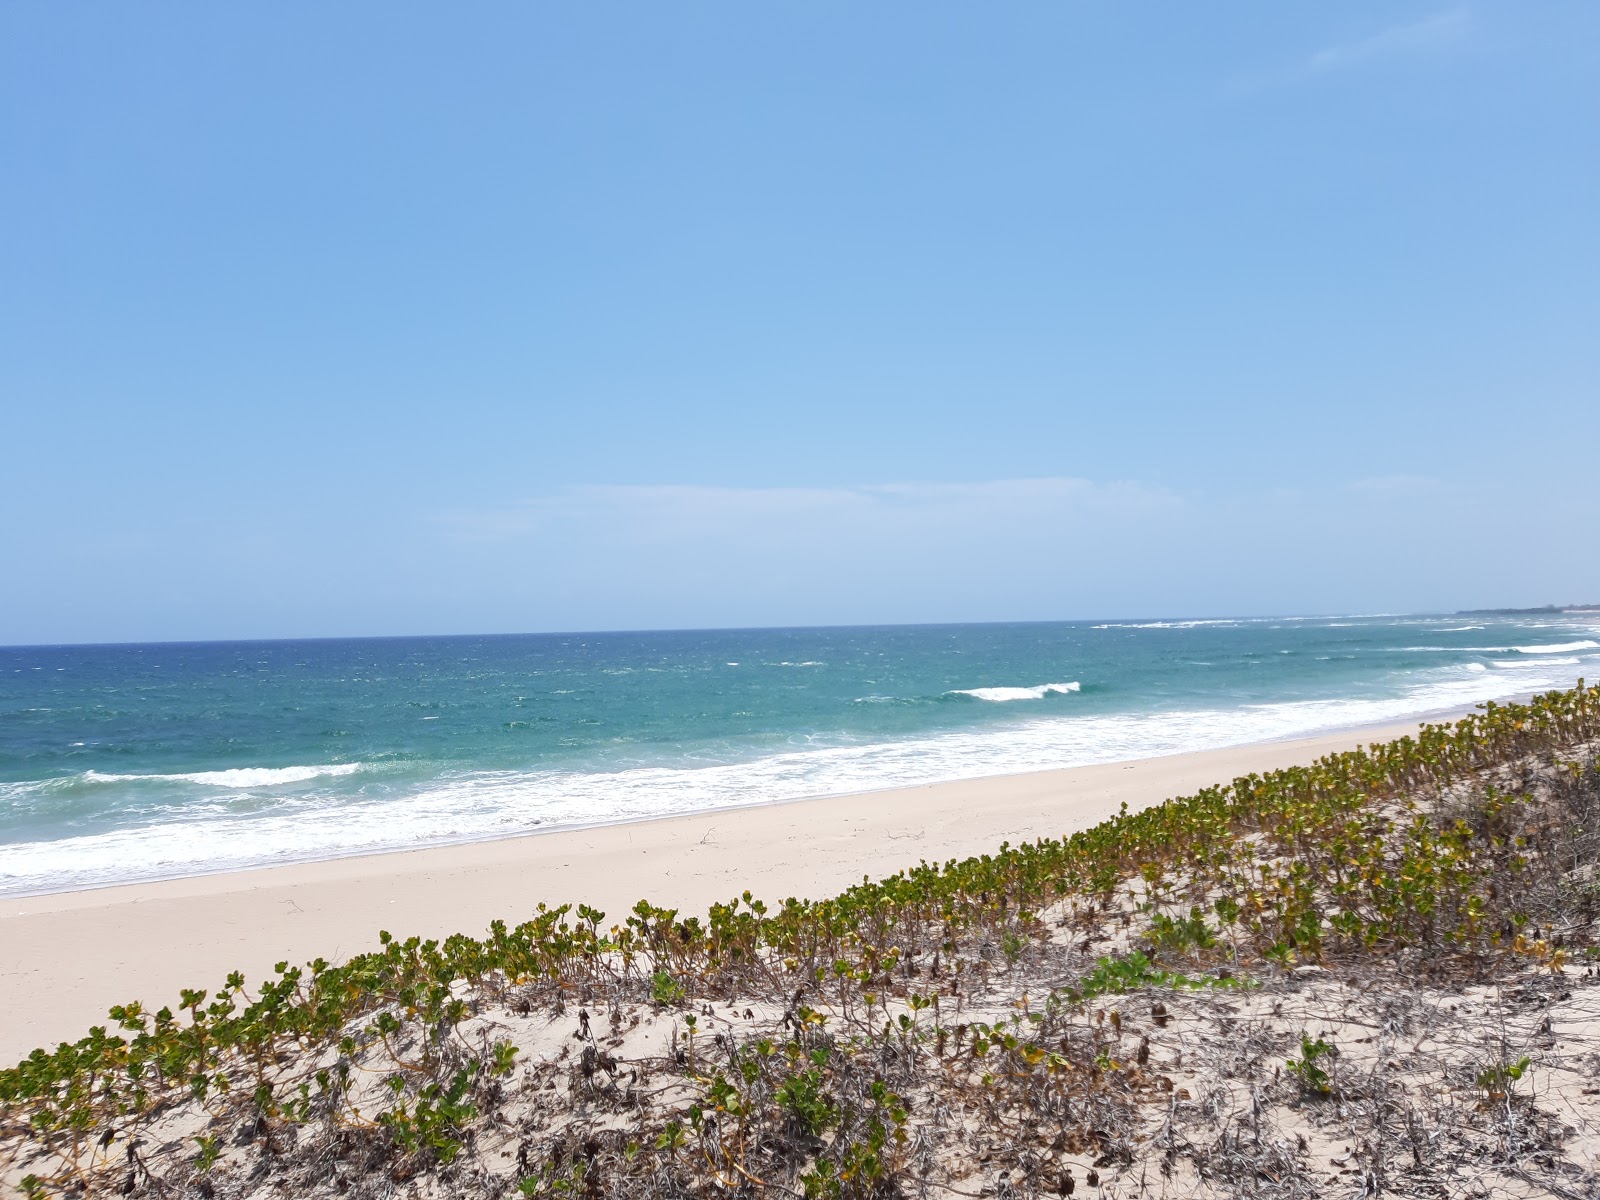 Foto von Diamonds Mequfi Resort Beach mit langer gerader strand